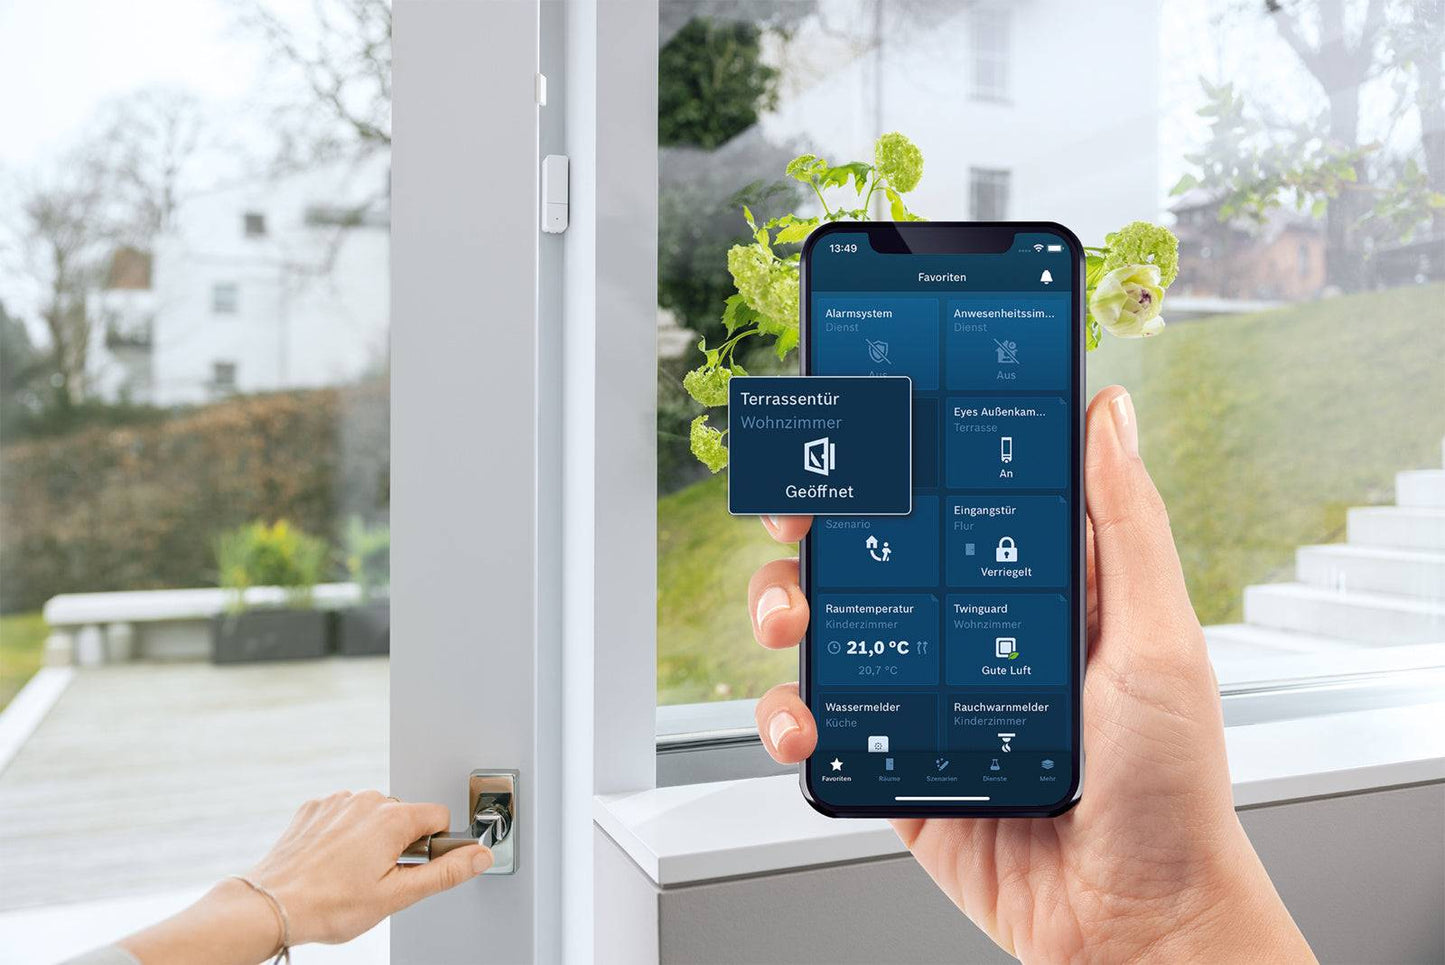 BOSCH Smart Home Kontakt II Tür-/Fensterkontakt